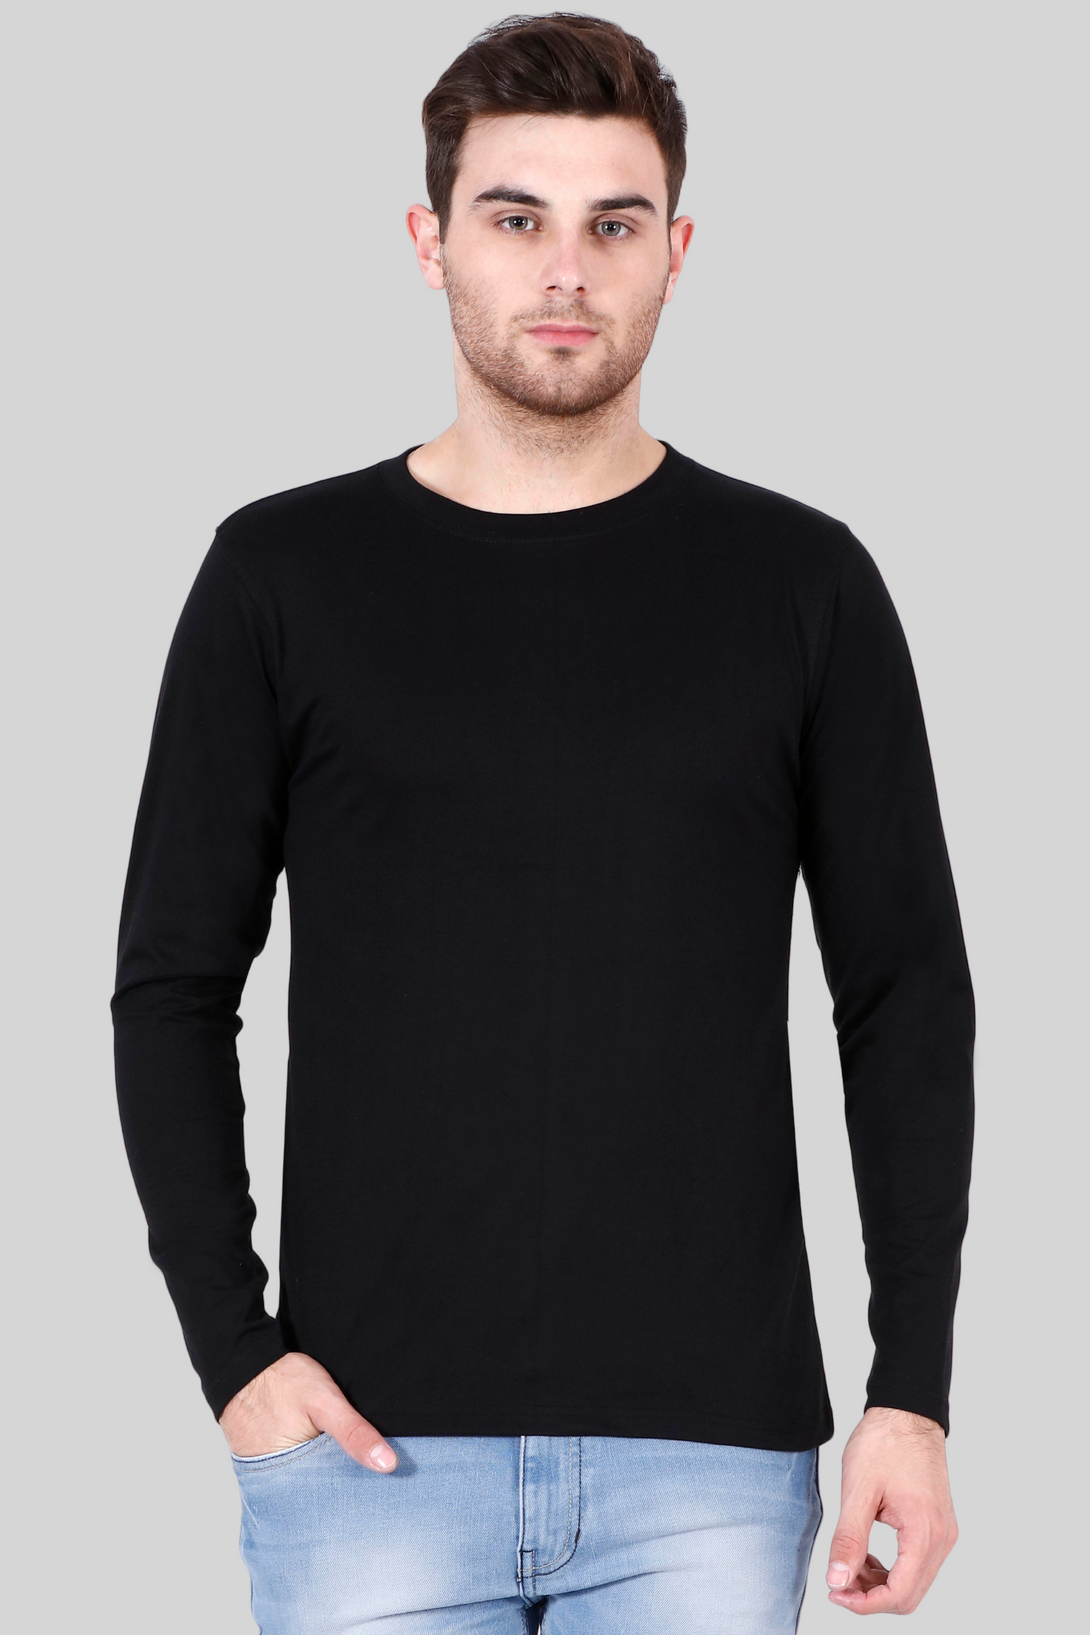 Black Full Sleeve T-Shirt For Men - WowWaves - 8